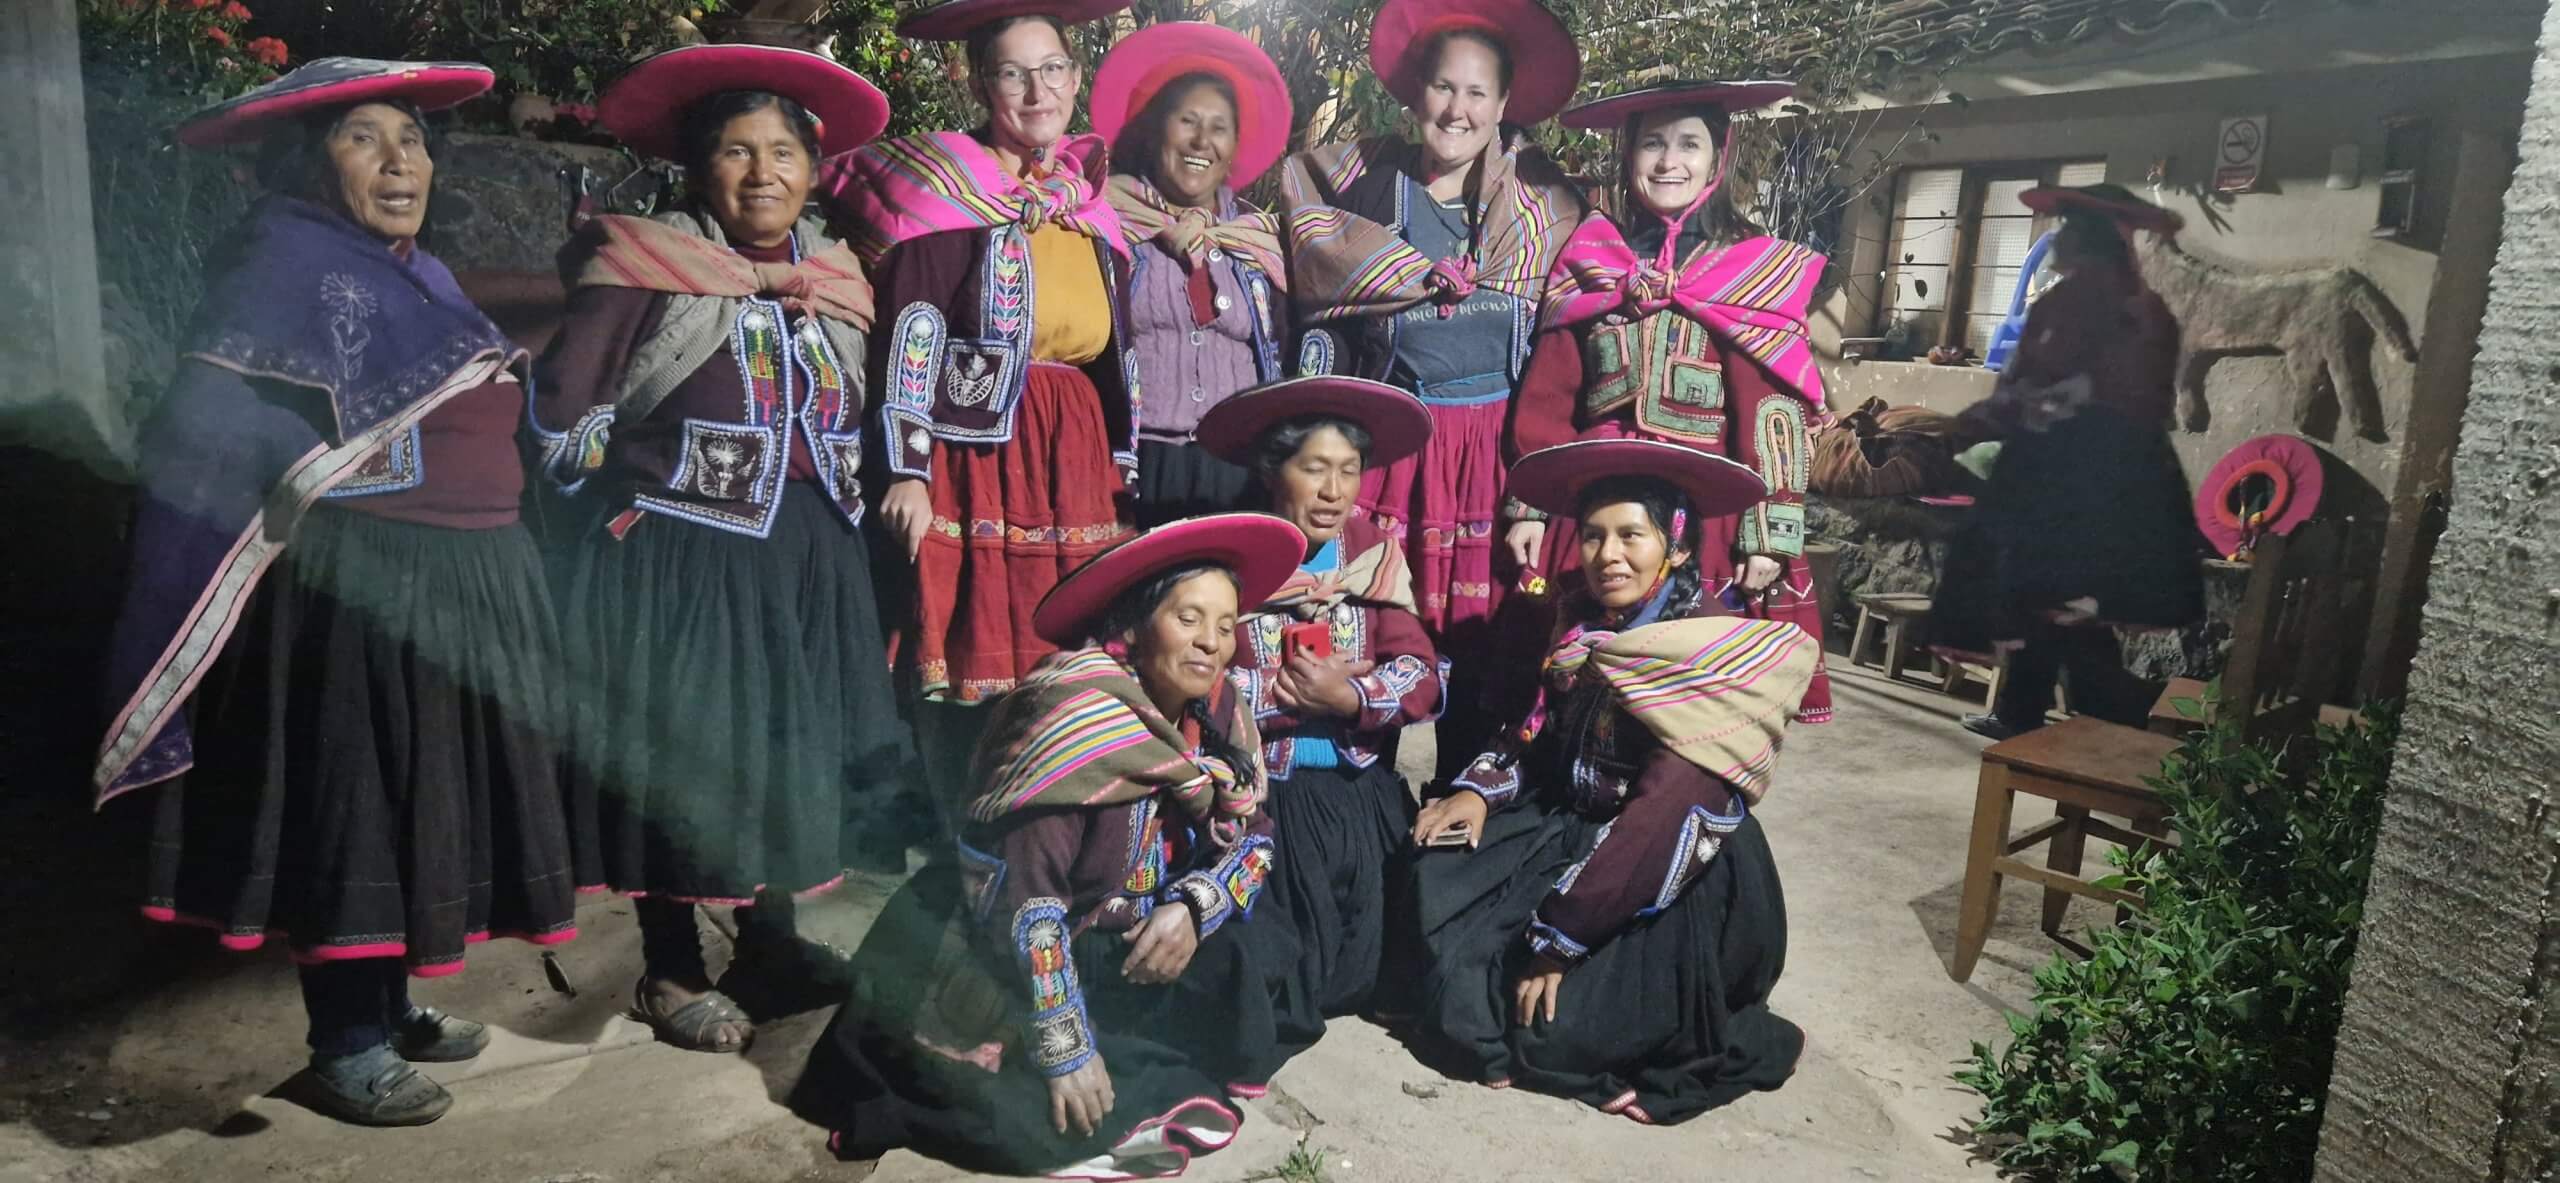 Cesta po Peru – komunita v Raqchi